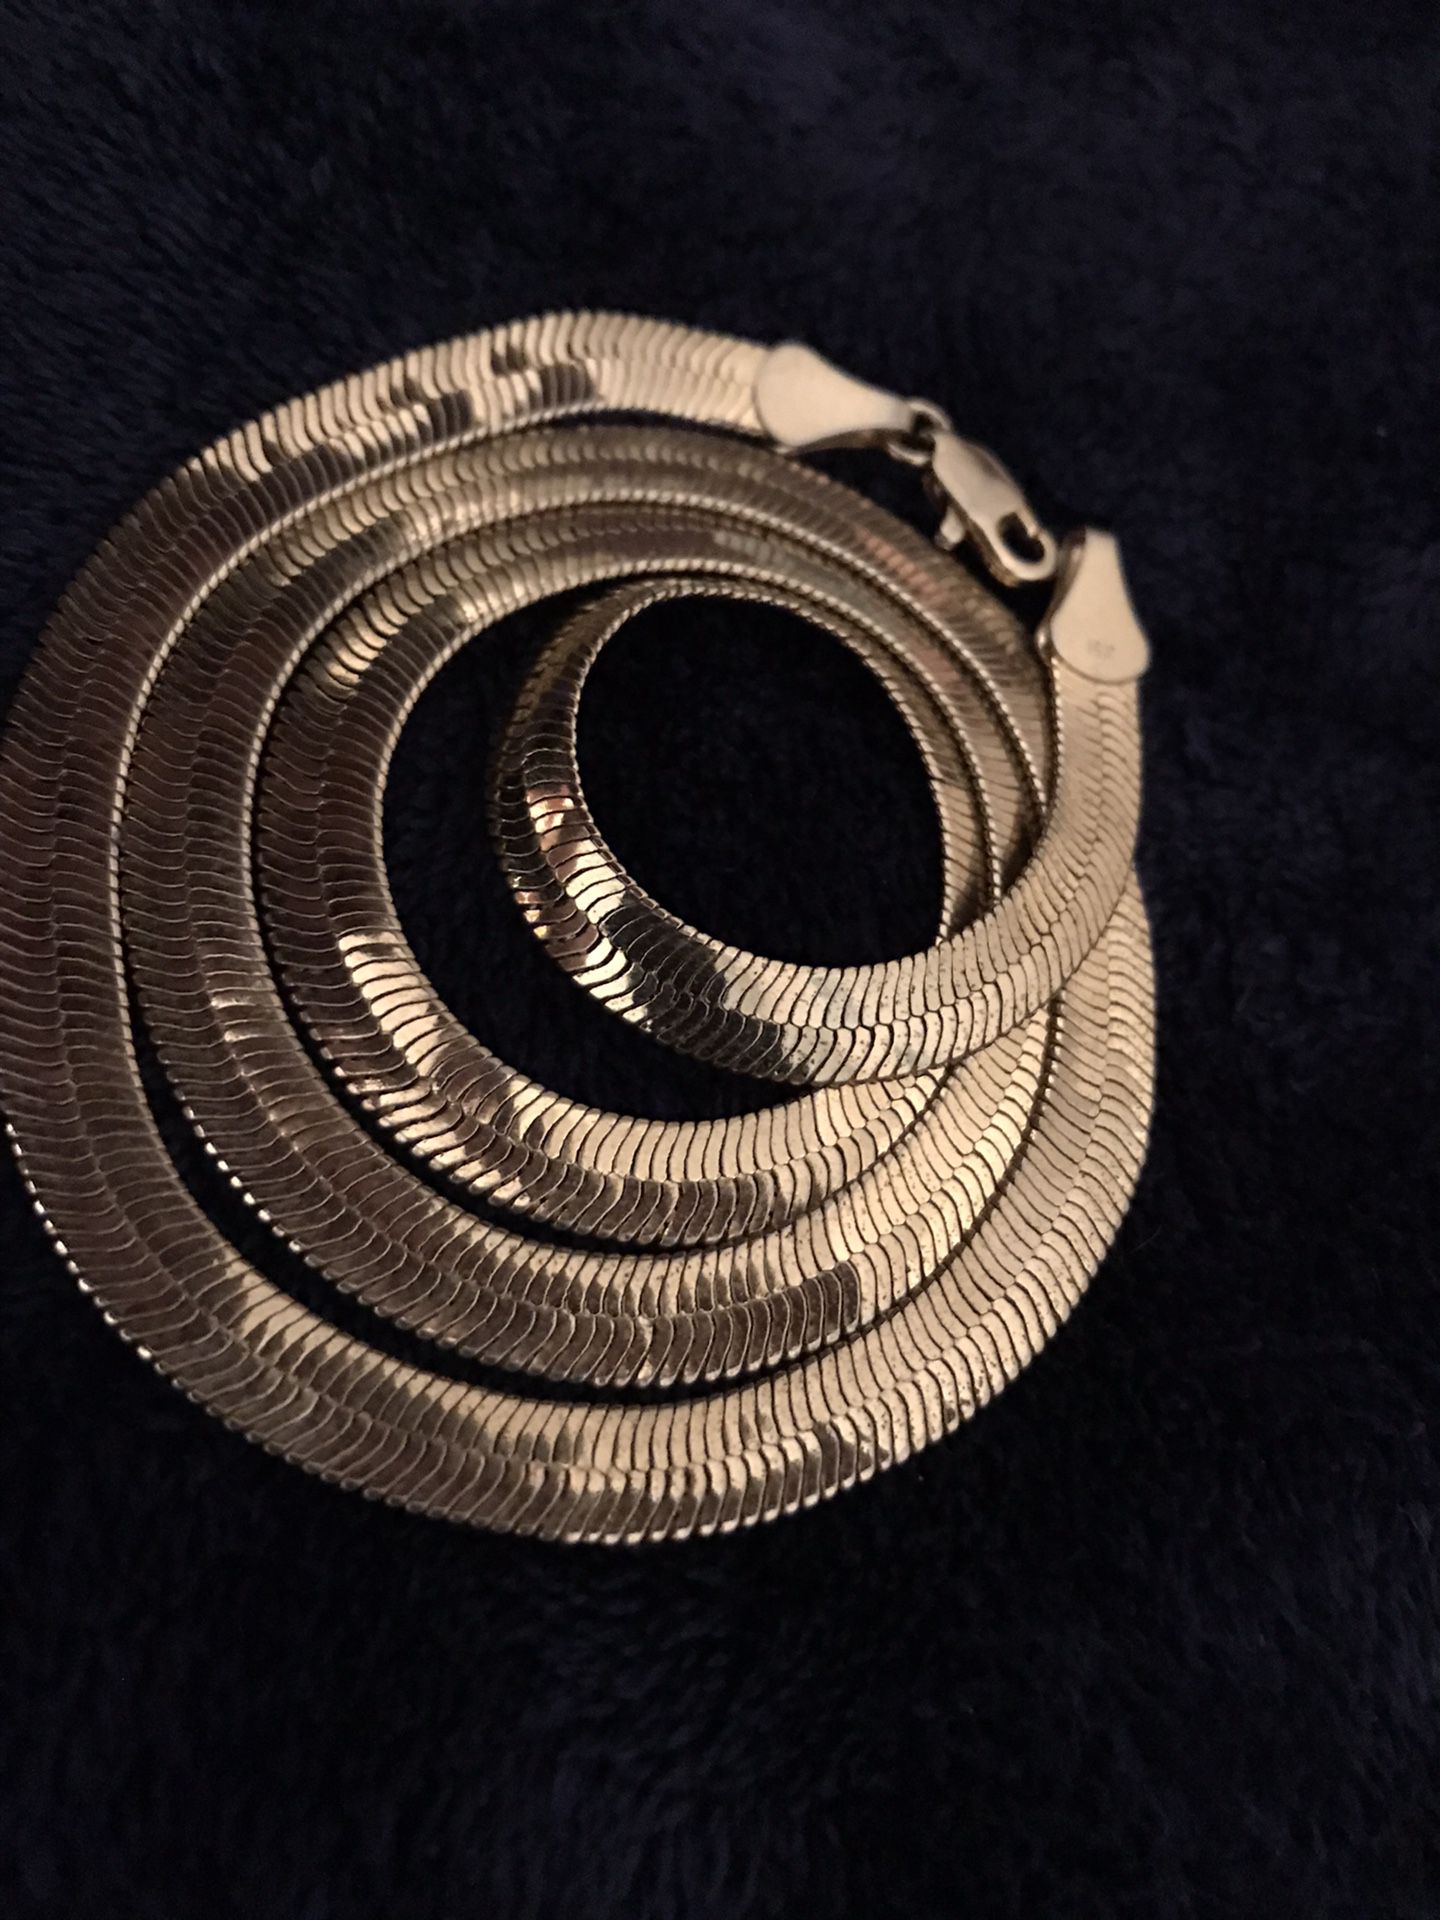 14kt Gold Herringbone chain 22 inches  (3mm) 